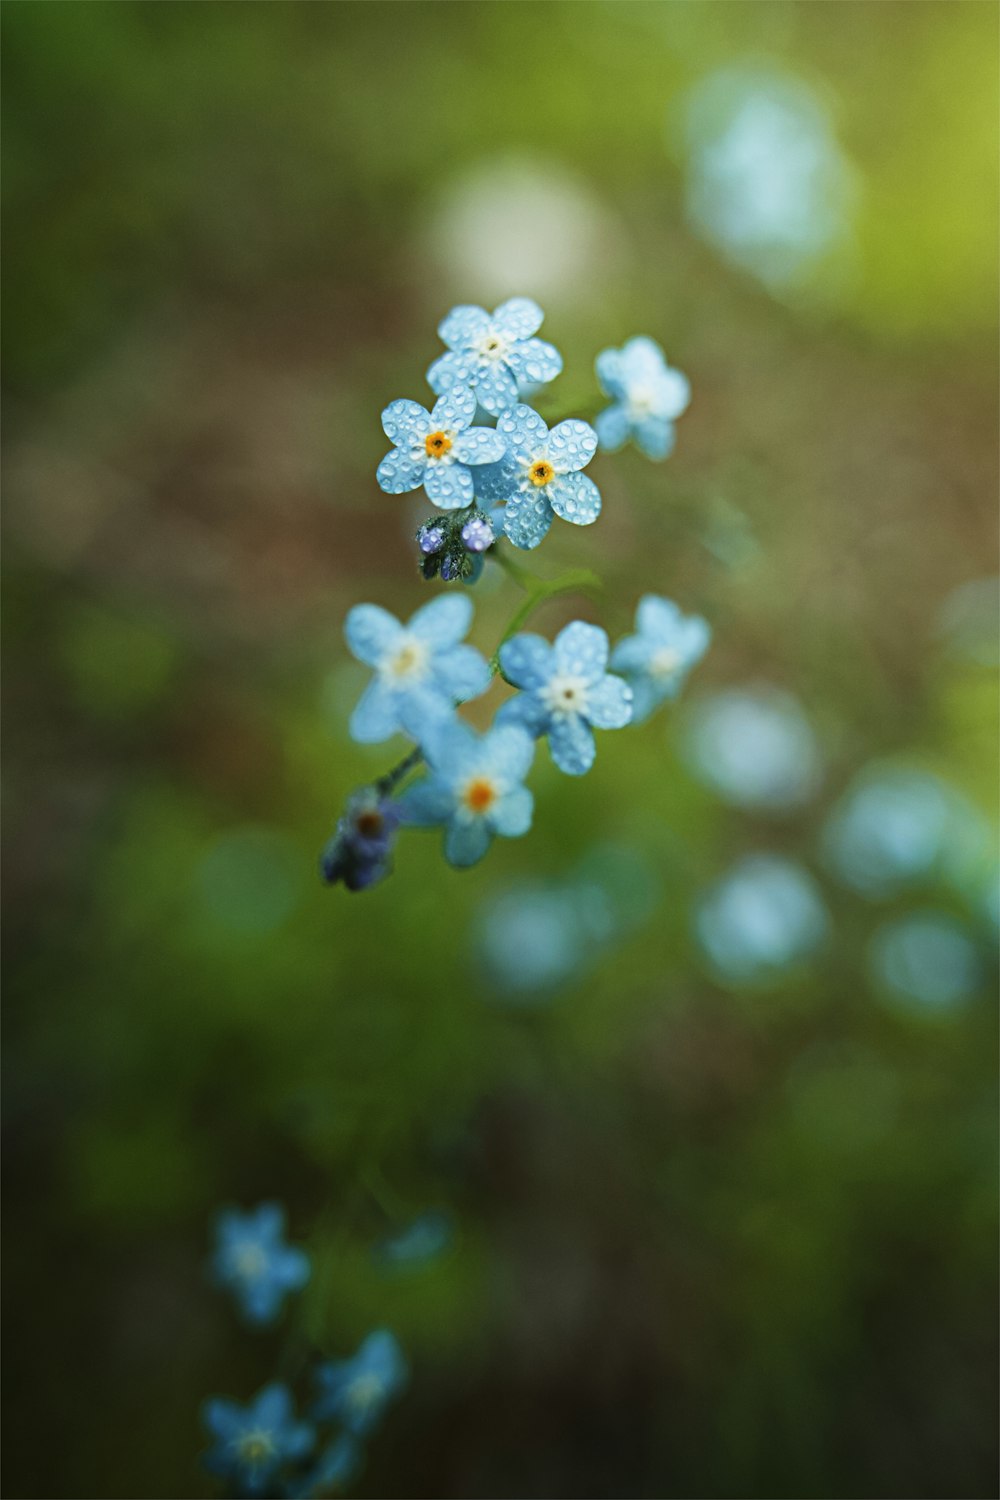 white and blue flowers in tilt shift lens